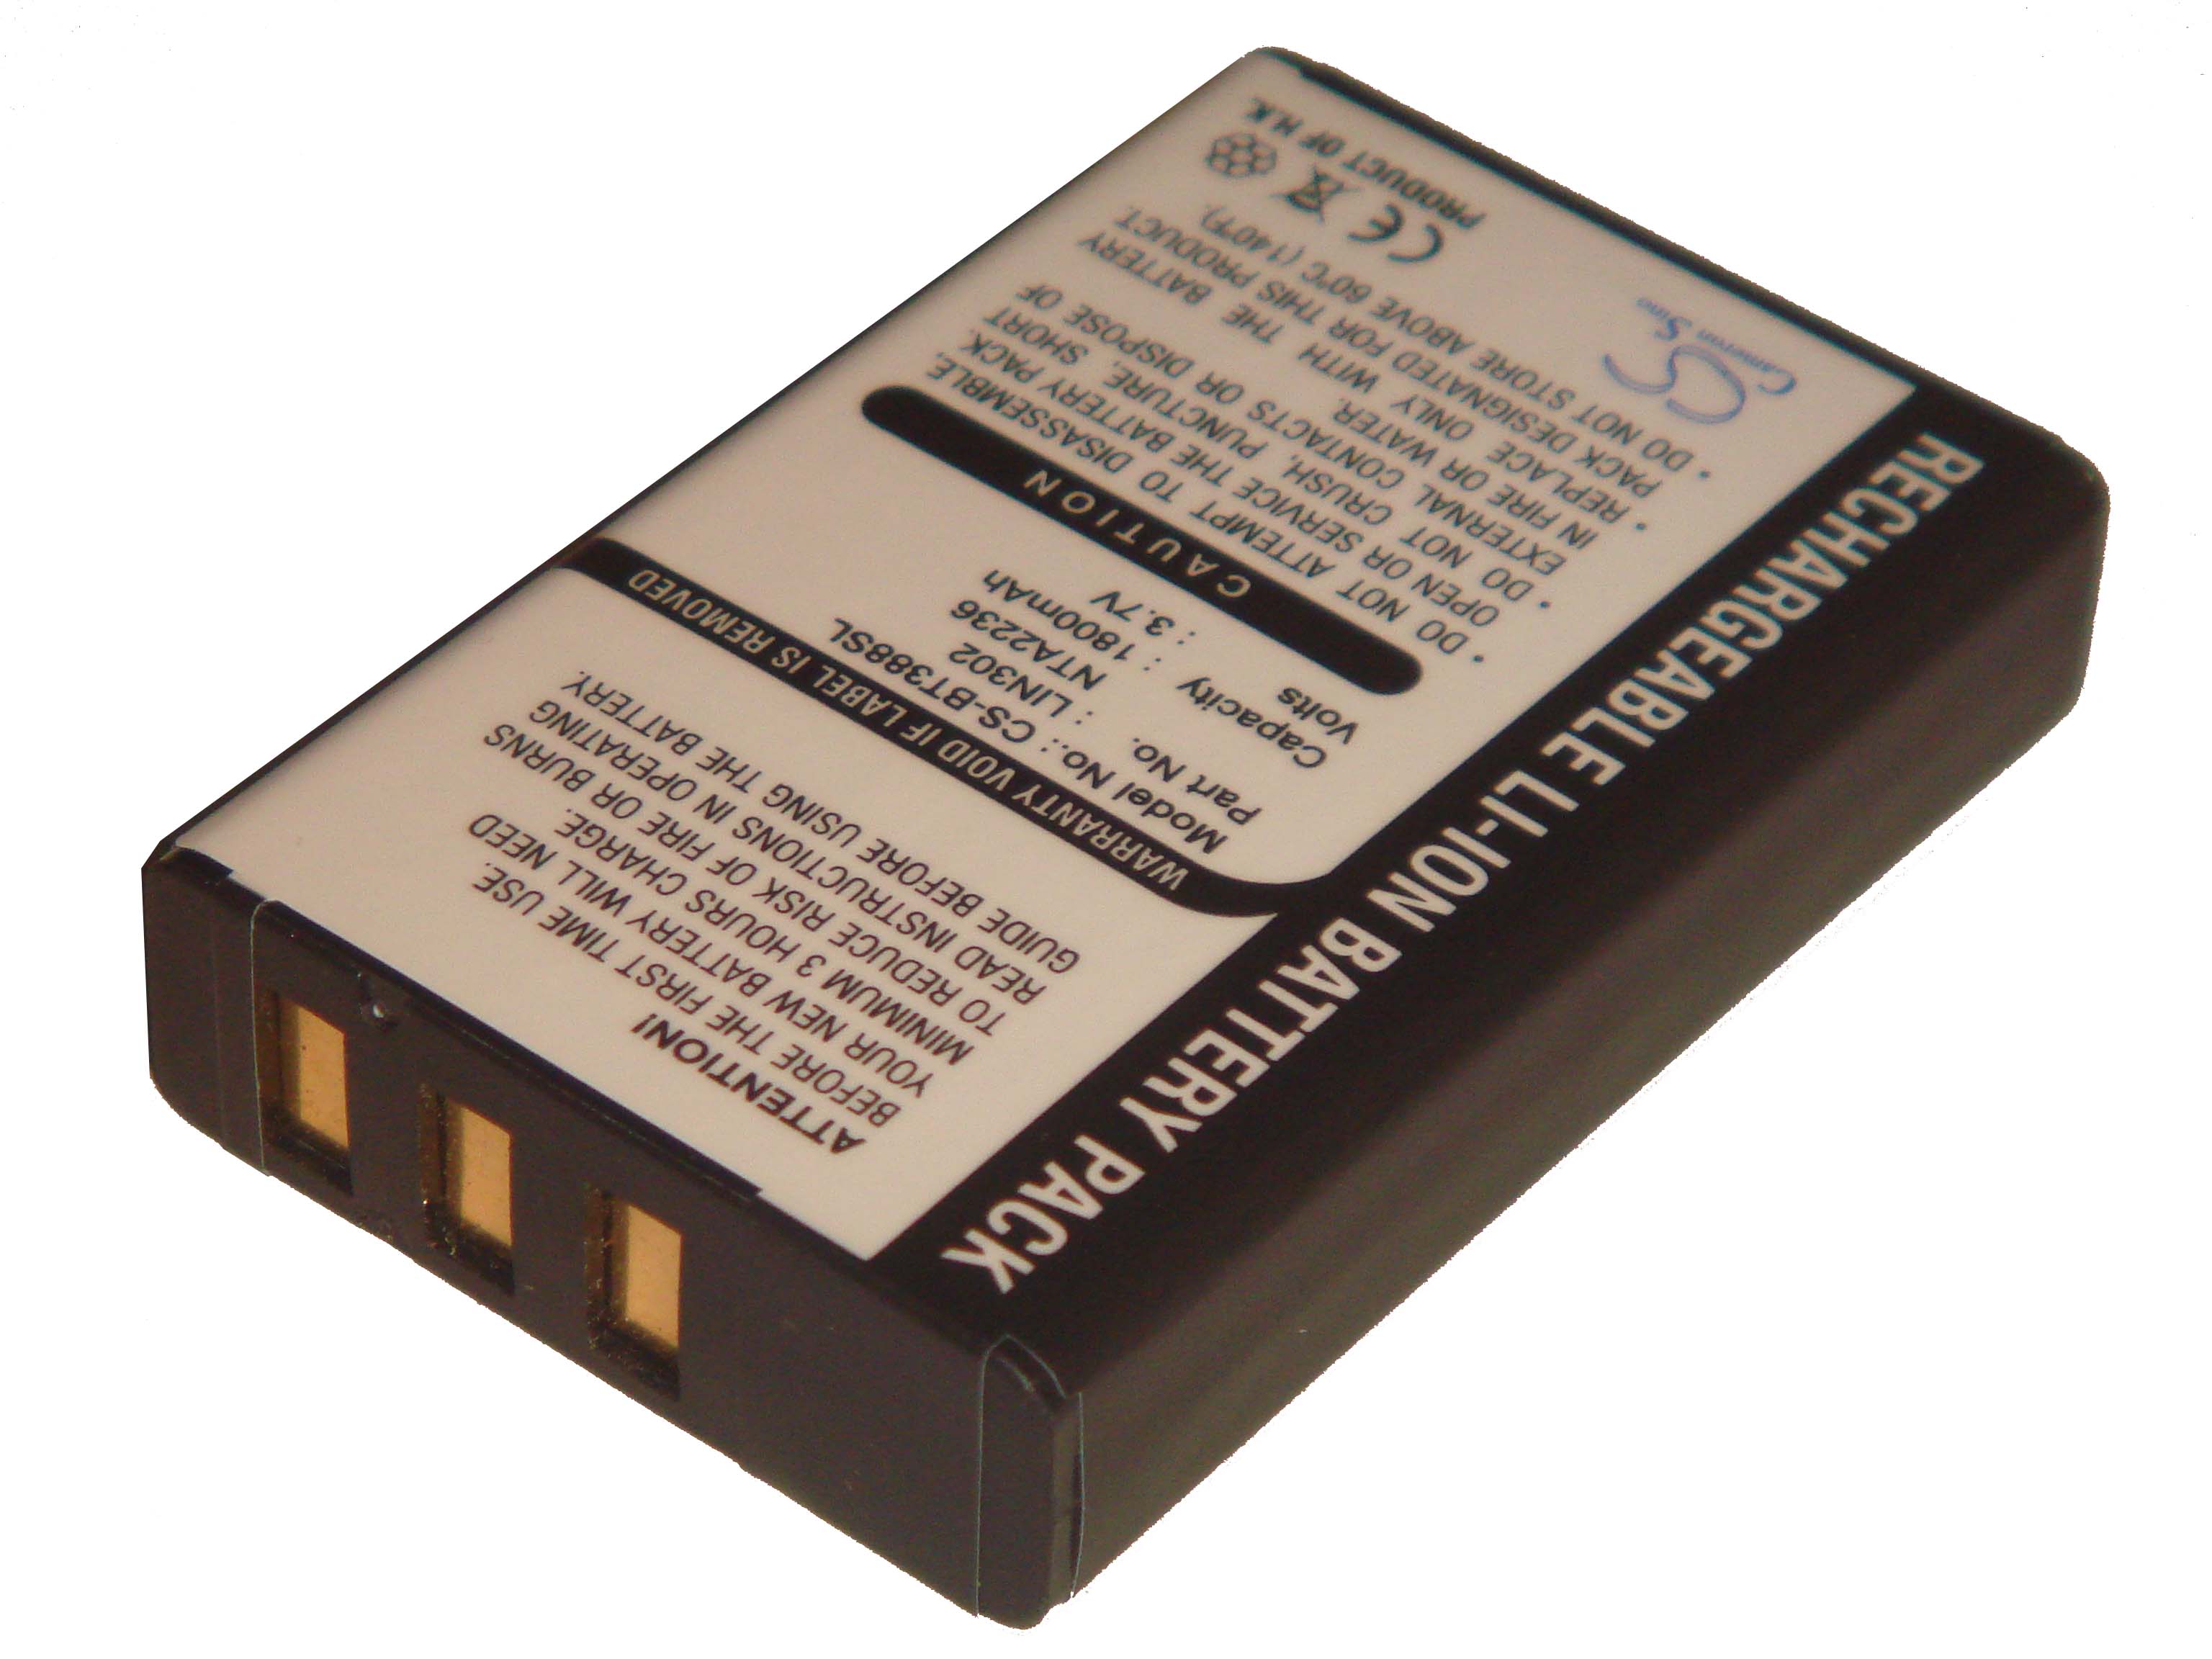 Batterie pour GNS 5840, 5843, BT-318, BT-318x, BT-338 / Royaltec RBT-2010 BT GPS / i-Trek M3 BT GPS pour navig